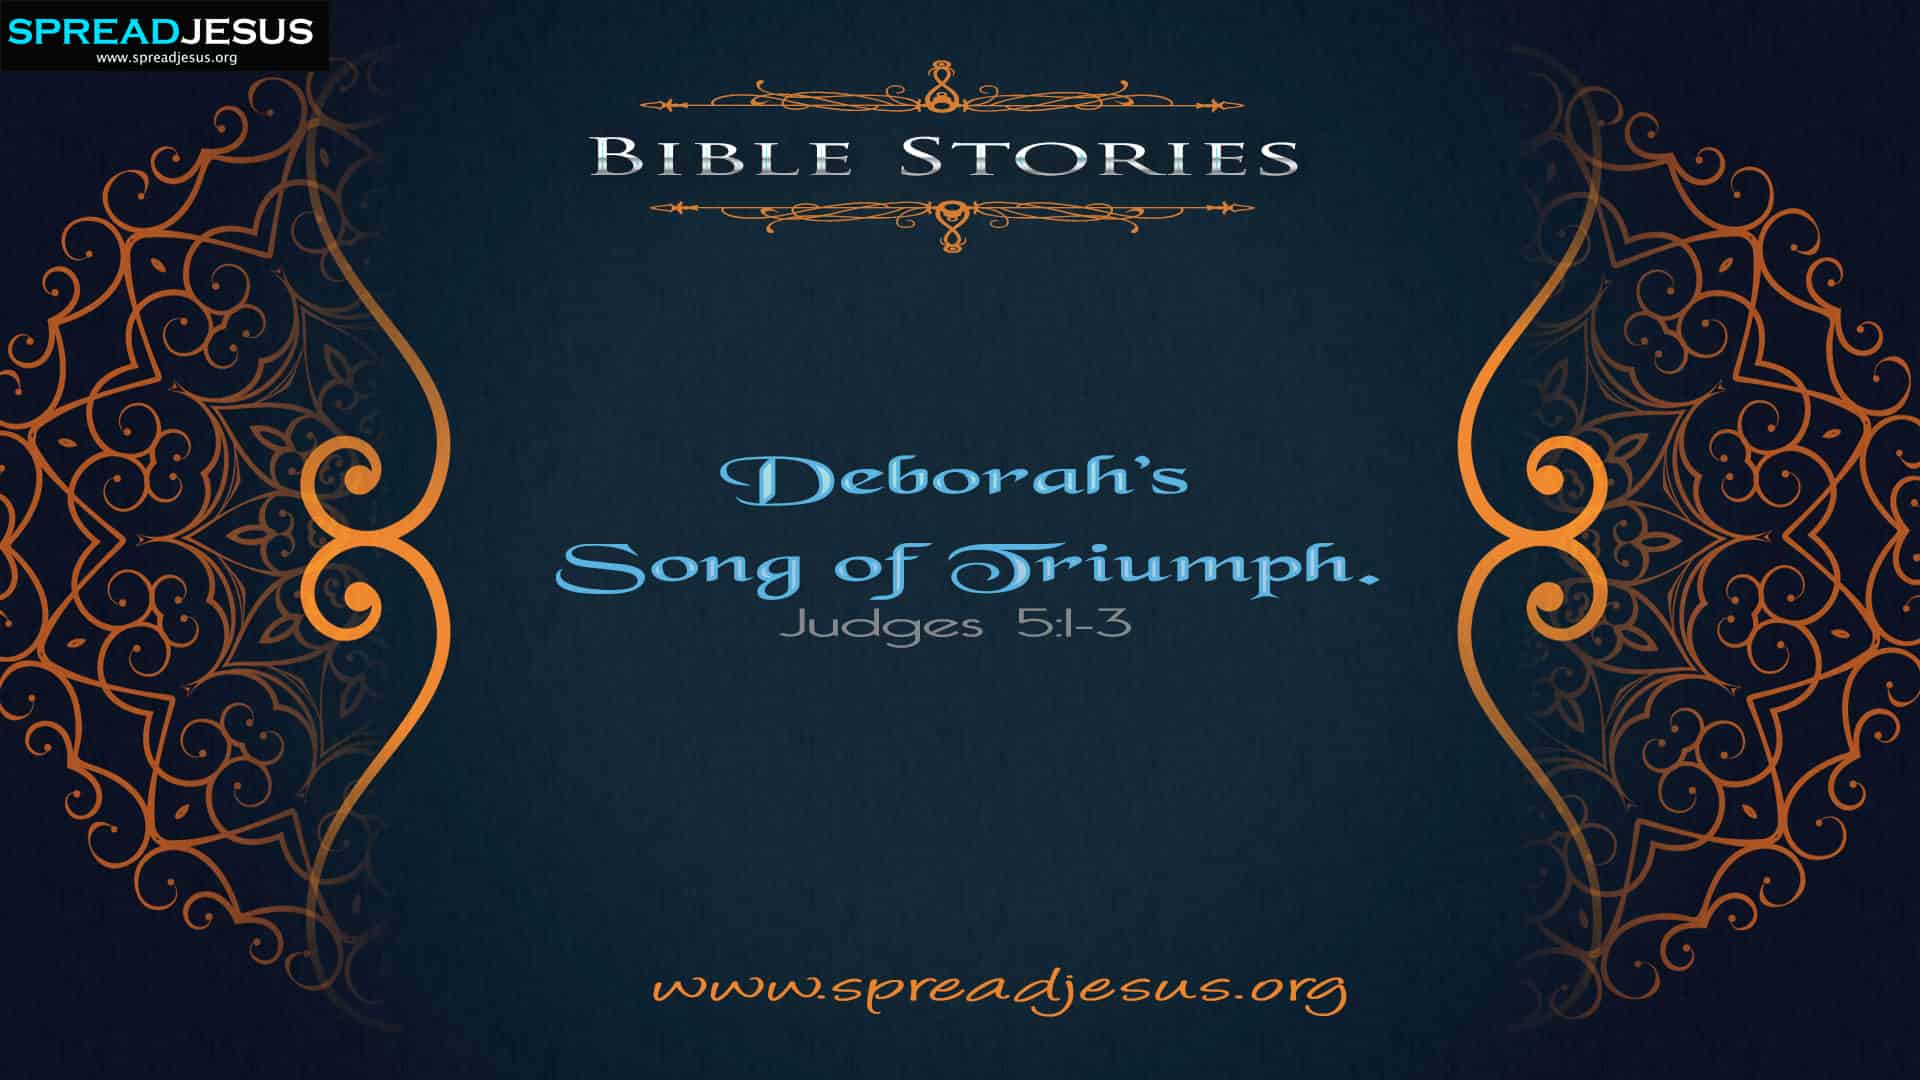 Deborah’s Song of Triumph